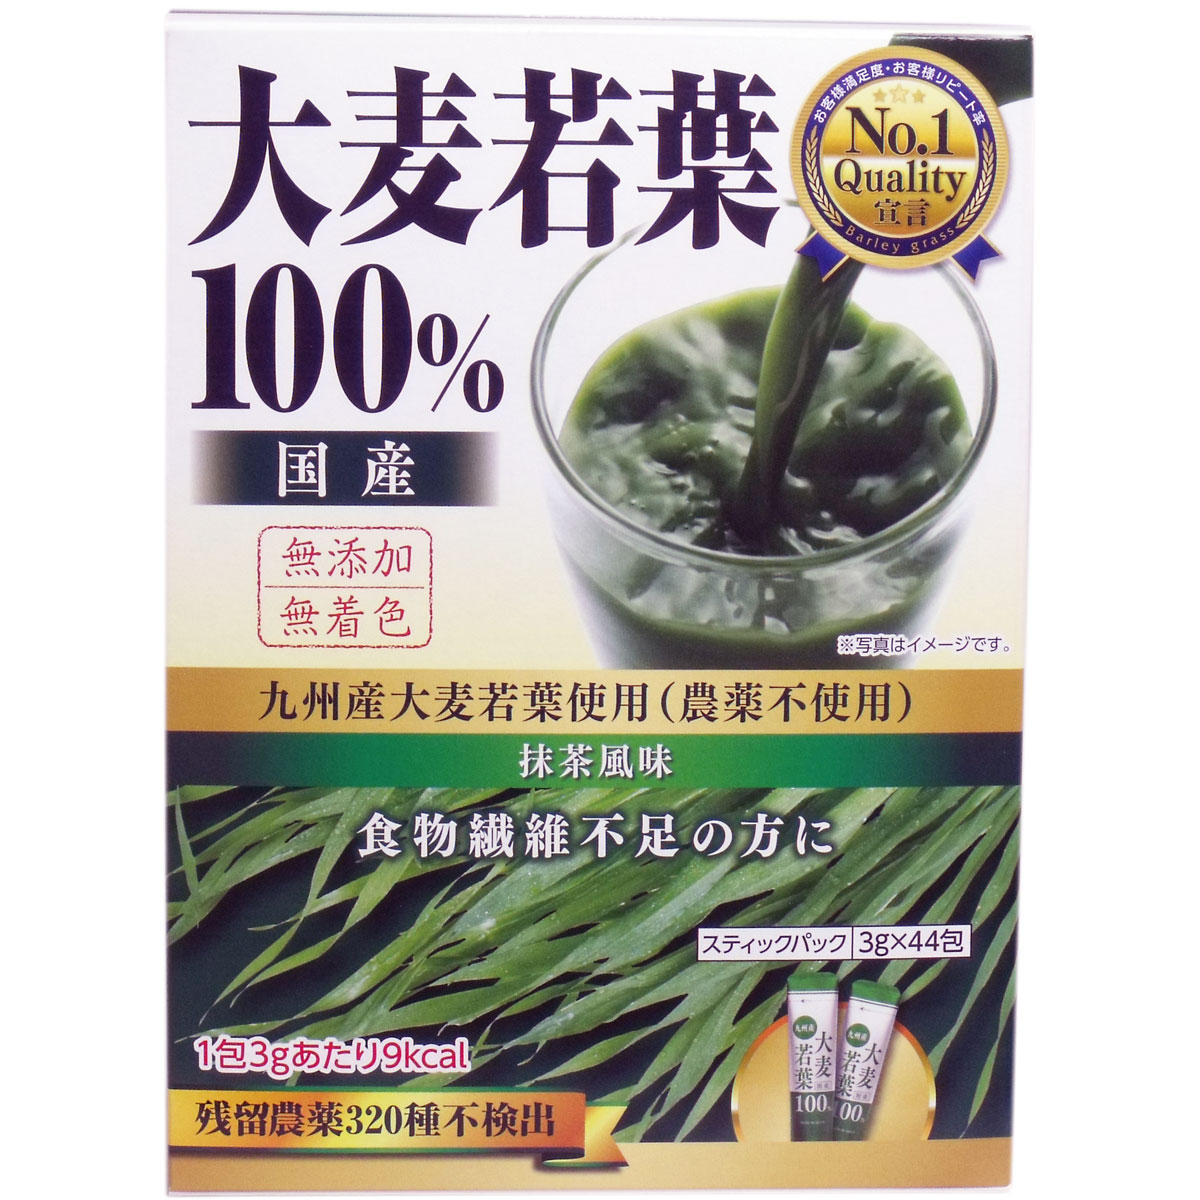 ※[販売終了]九州産大麦若葉 100% 抹茶風味 3g×44包入